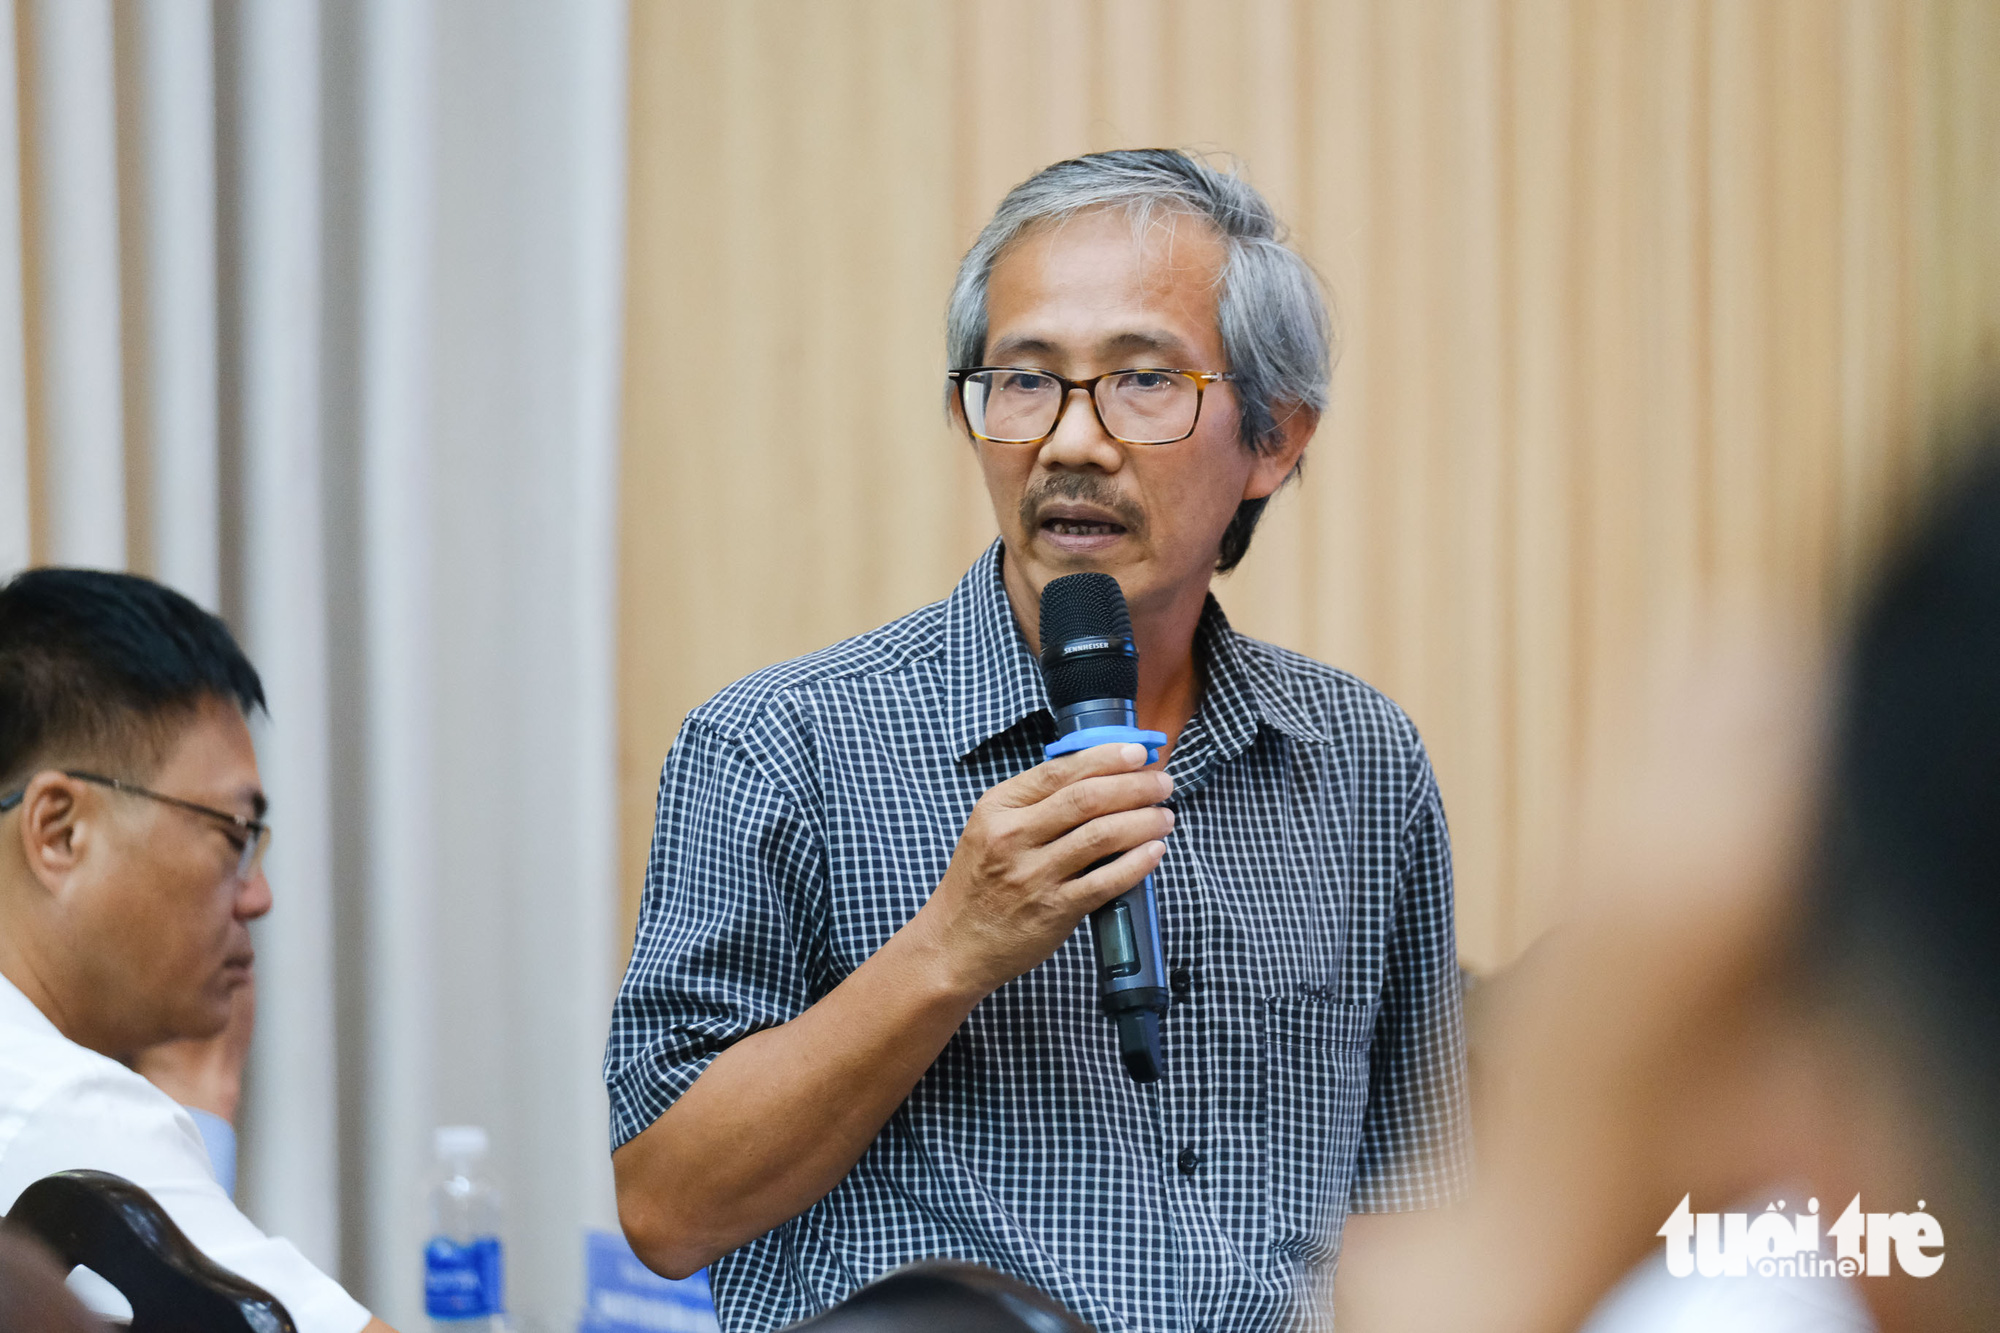 Ông Trần Văn Hoàng, phó giám đốc Sở Xây dựng TP Đà Nẵng, thông tin các dự án nhà ở xã hội đang triển khai tới công nhân - Ảnh: TẤN LỰC